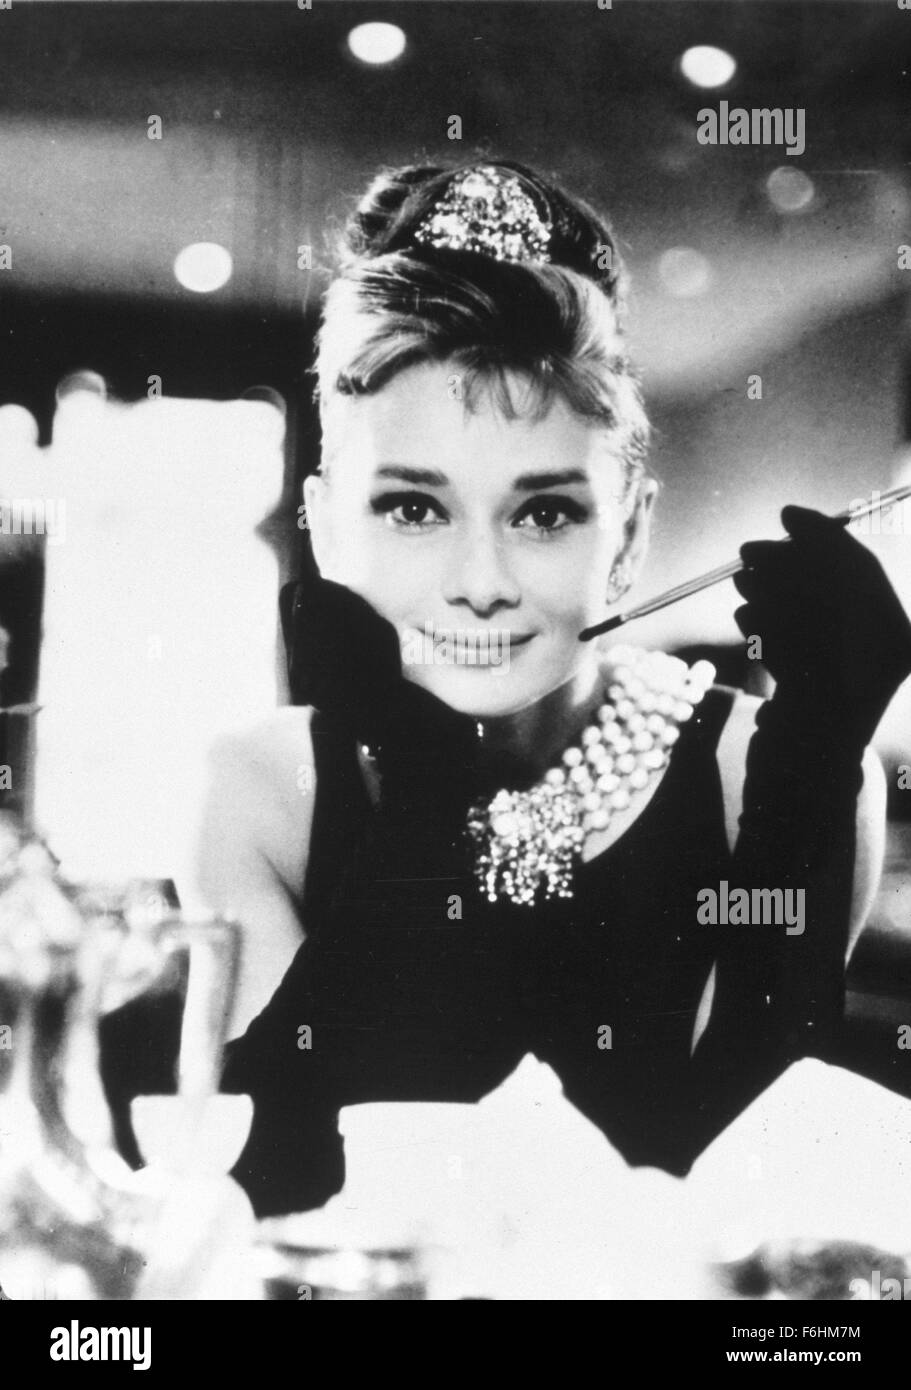 1961, le titre du film : Breakfast at Tiffany's, Directeur : BLAKE EDWARDS, Studio : Paramount, Photo : Audrey Hepburn, gants, Dame, TIARA, bijoux, porte-cigarette, tabac, restaurants, complexes, riches. (Crédit Image : SNAP) Banque D'Images